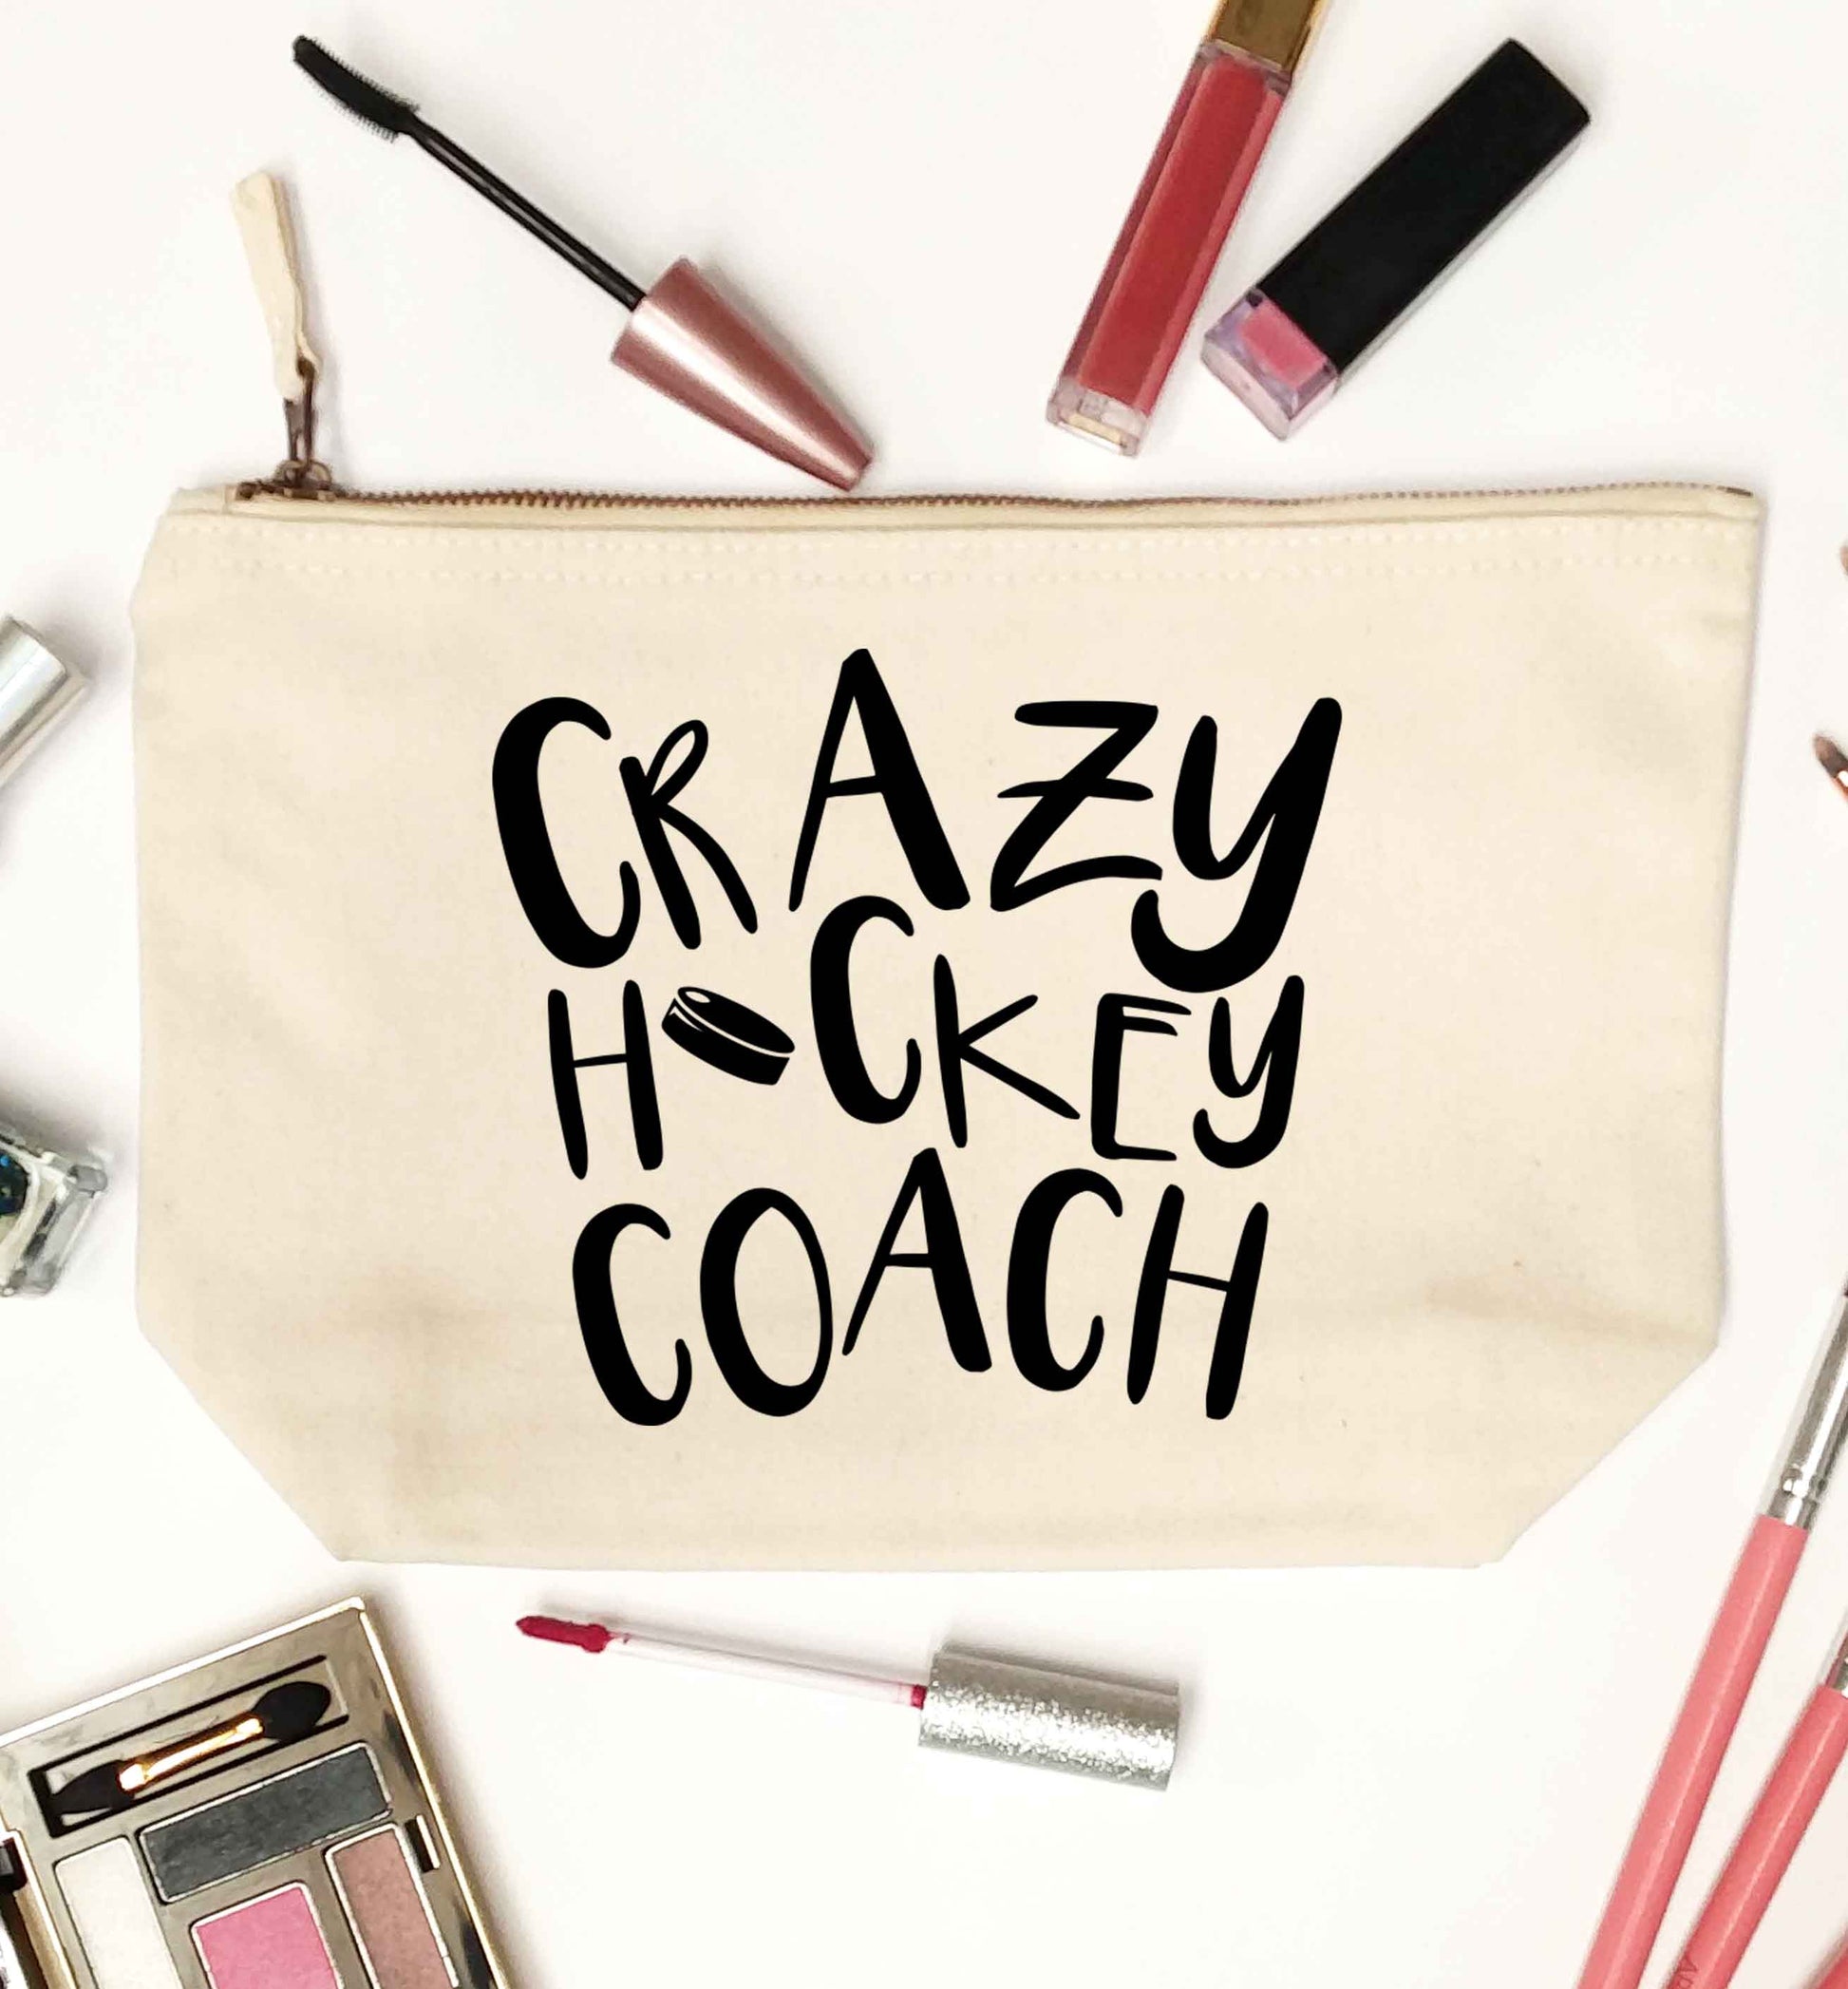 Crazy hockey coach natural makeup bag